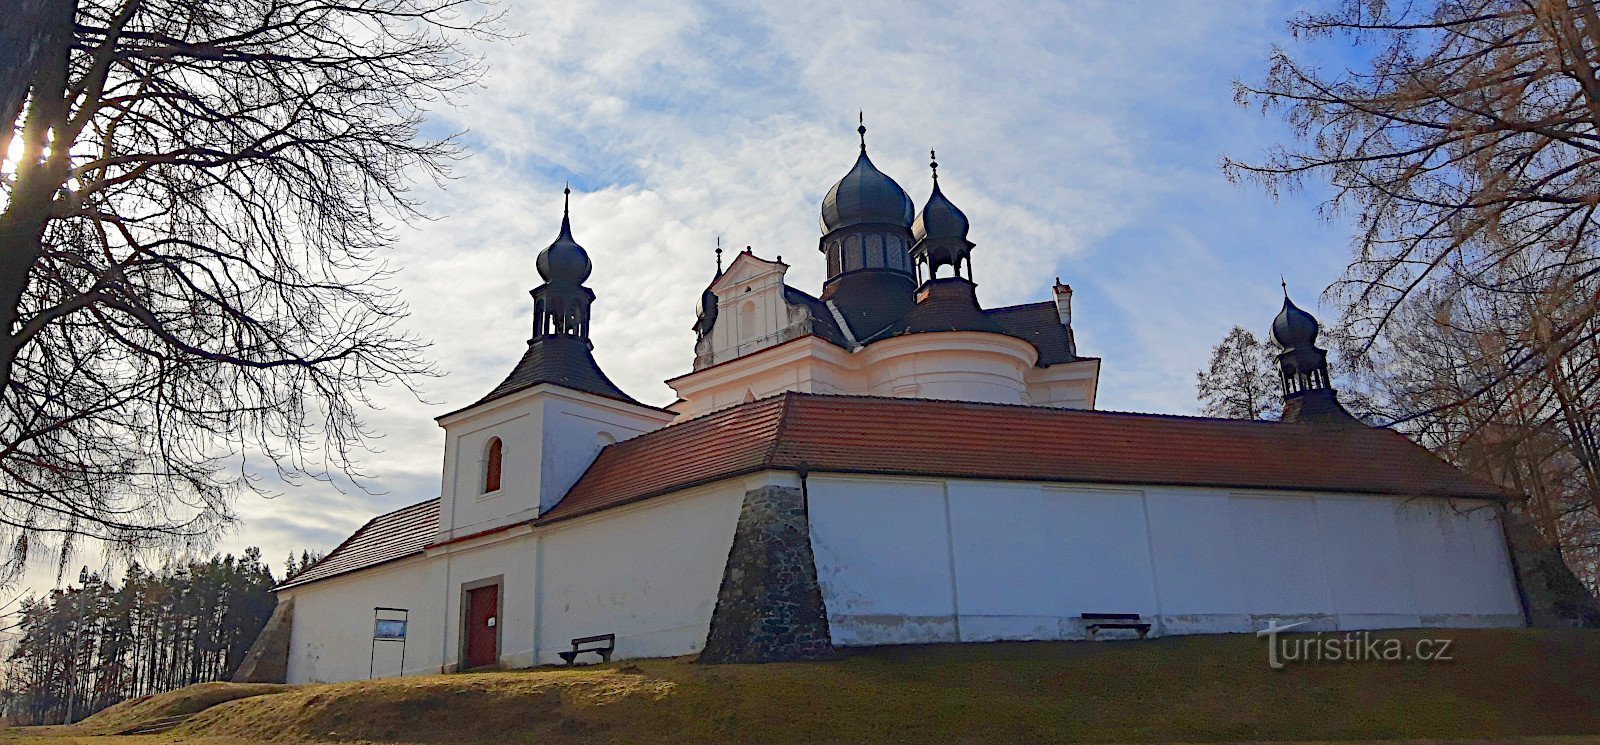 Trhové Sviny - паломницький бароковий костел Святої Трійці